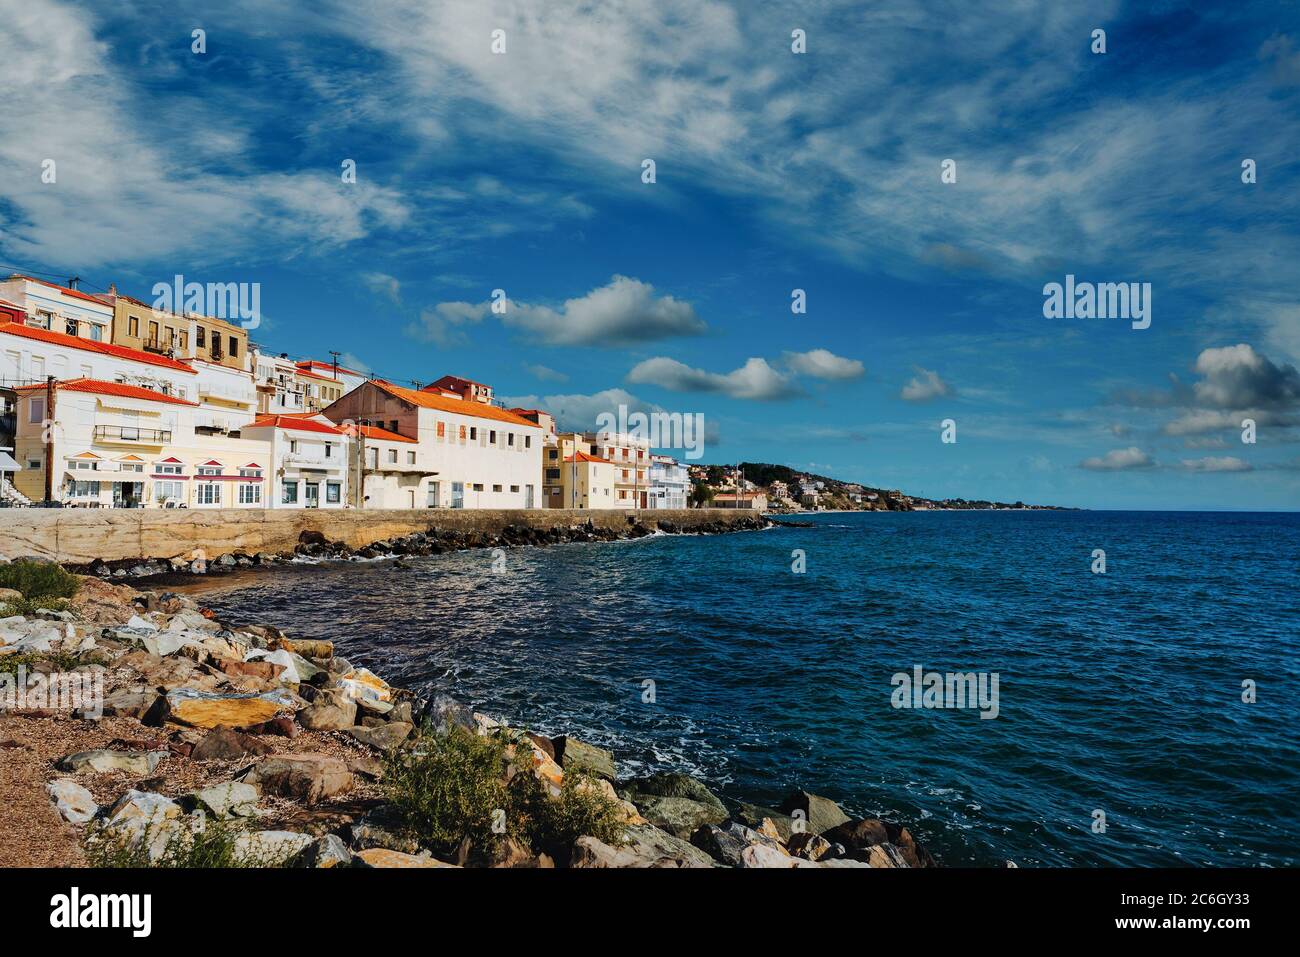 Pittoresco villaggio costiero di Plomari (Plomarion) sulla bella isola Lesvos (Lesbos) in Grecia. Foto Stock